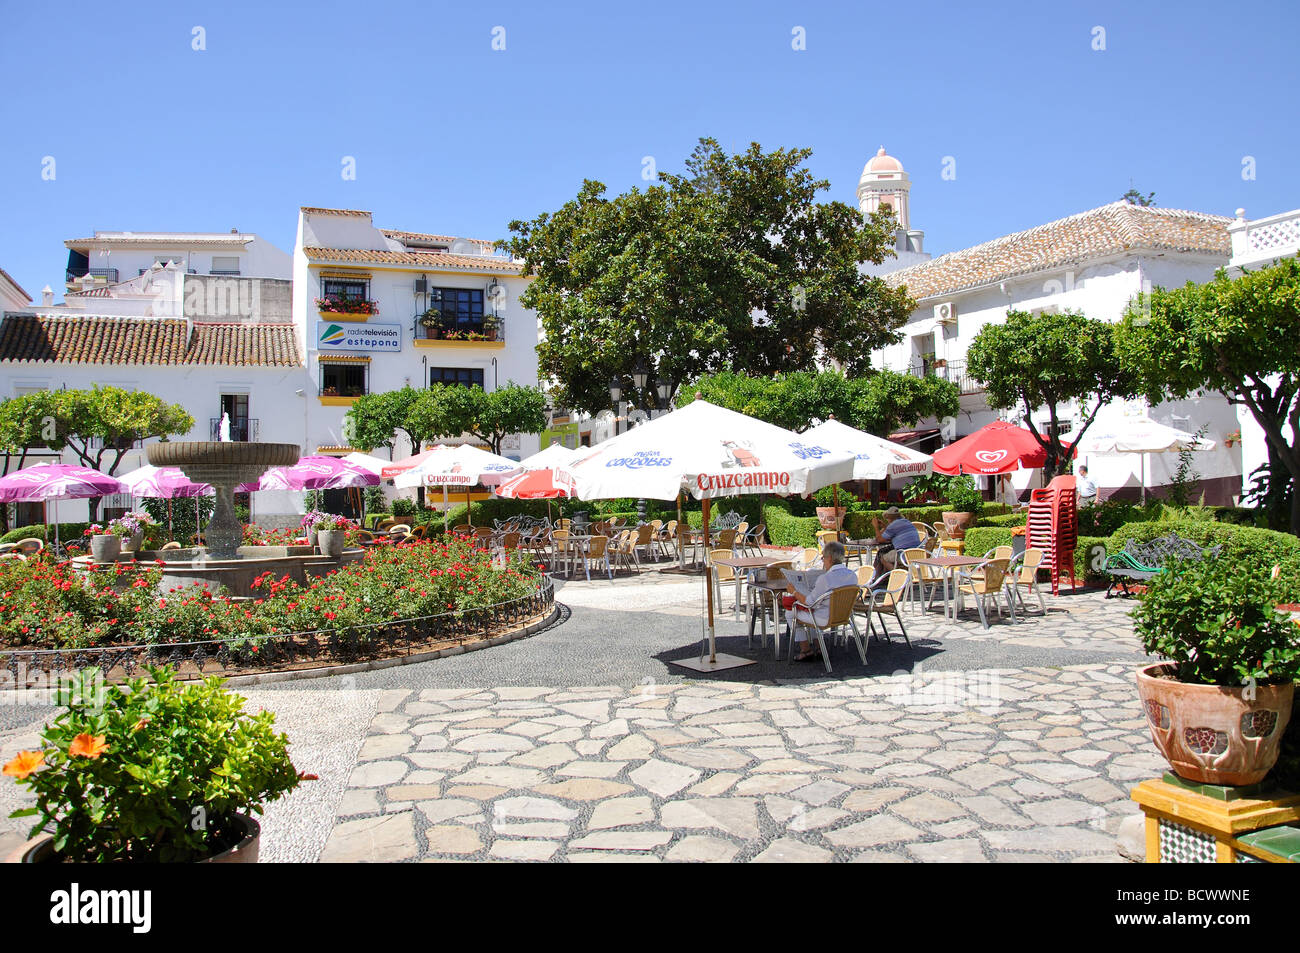 Plaza Las Flores, Estepona, Costa del Sol, Malaga Province, Andalusia, Spain Stock Photo